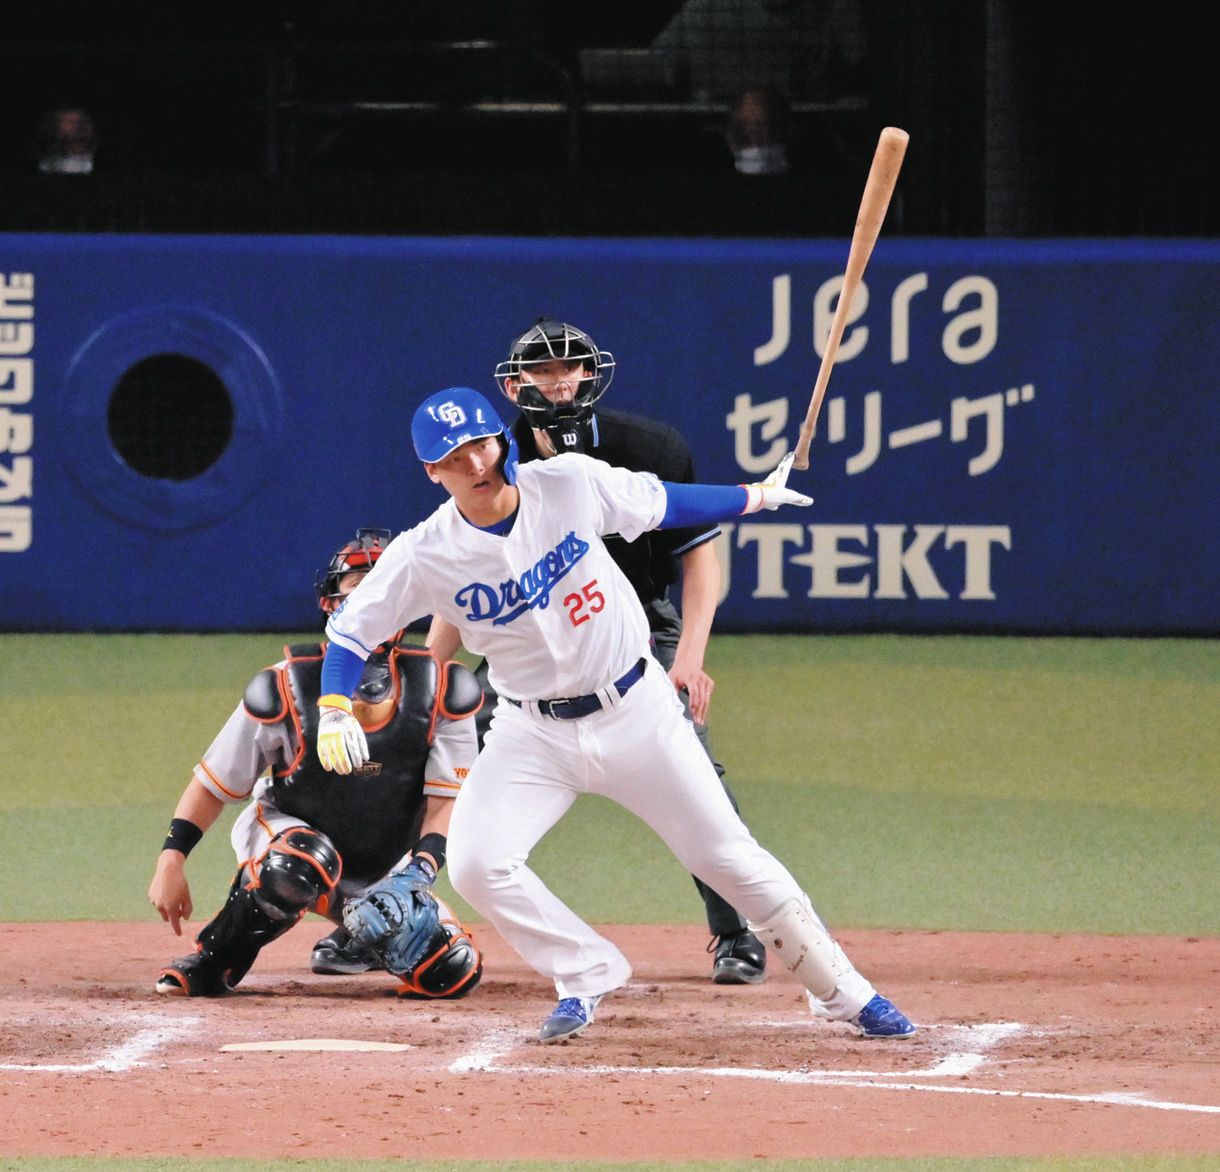 4番石川昂弥』64年ぶり大役果たす二塁打「求められるのは長打。打てて 